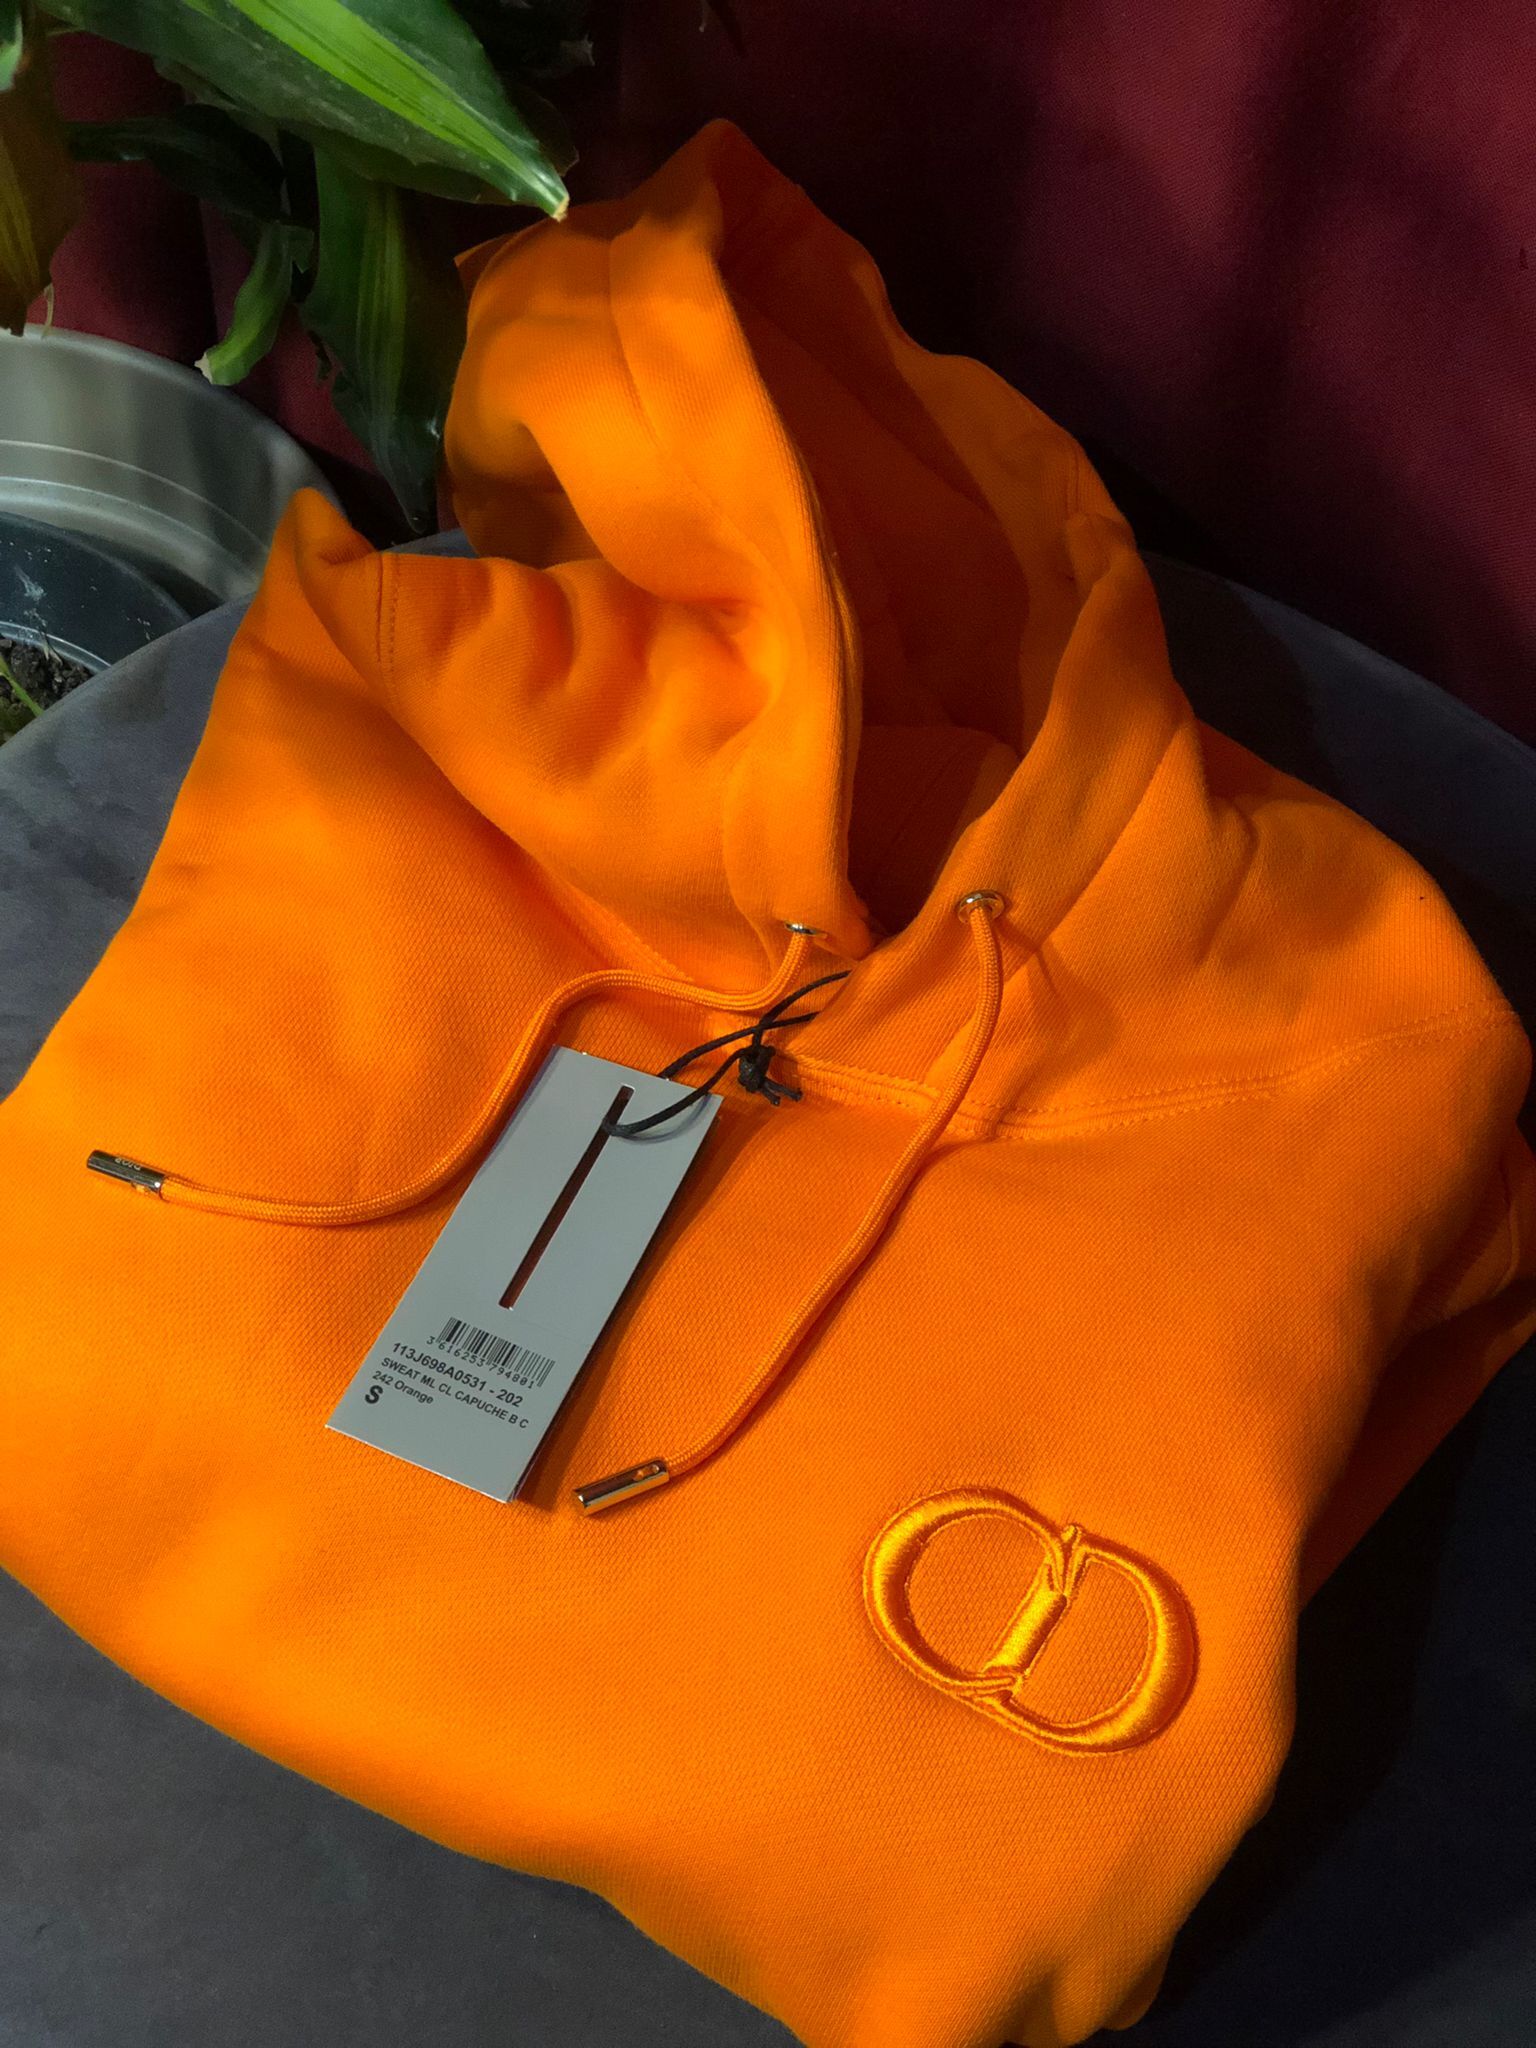 Sweatshirt À Capuche Cd Icon Orange, Dior Homme